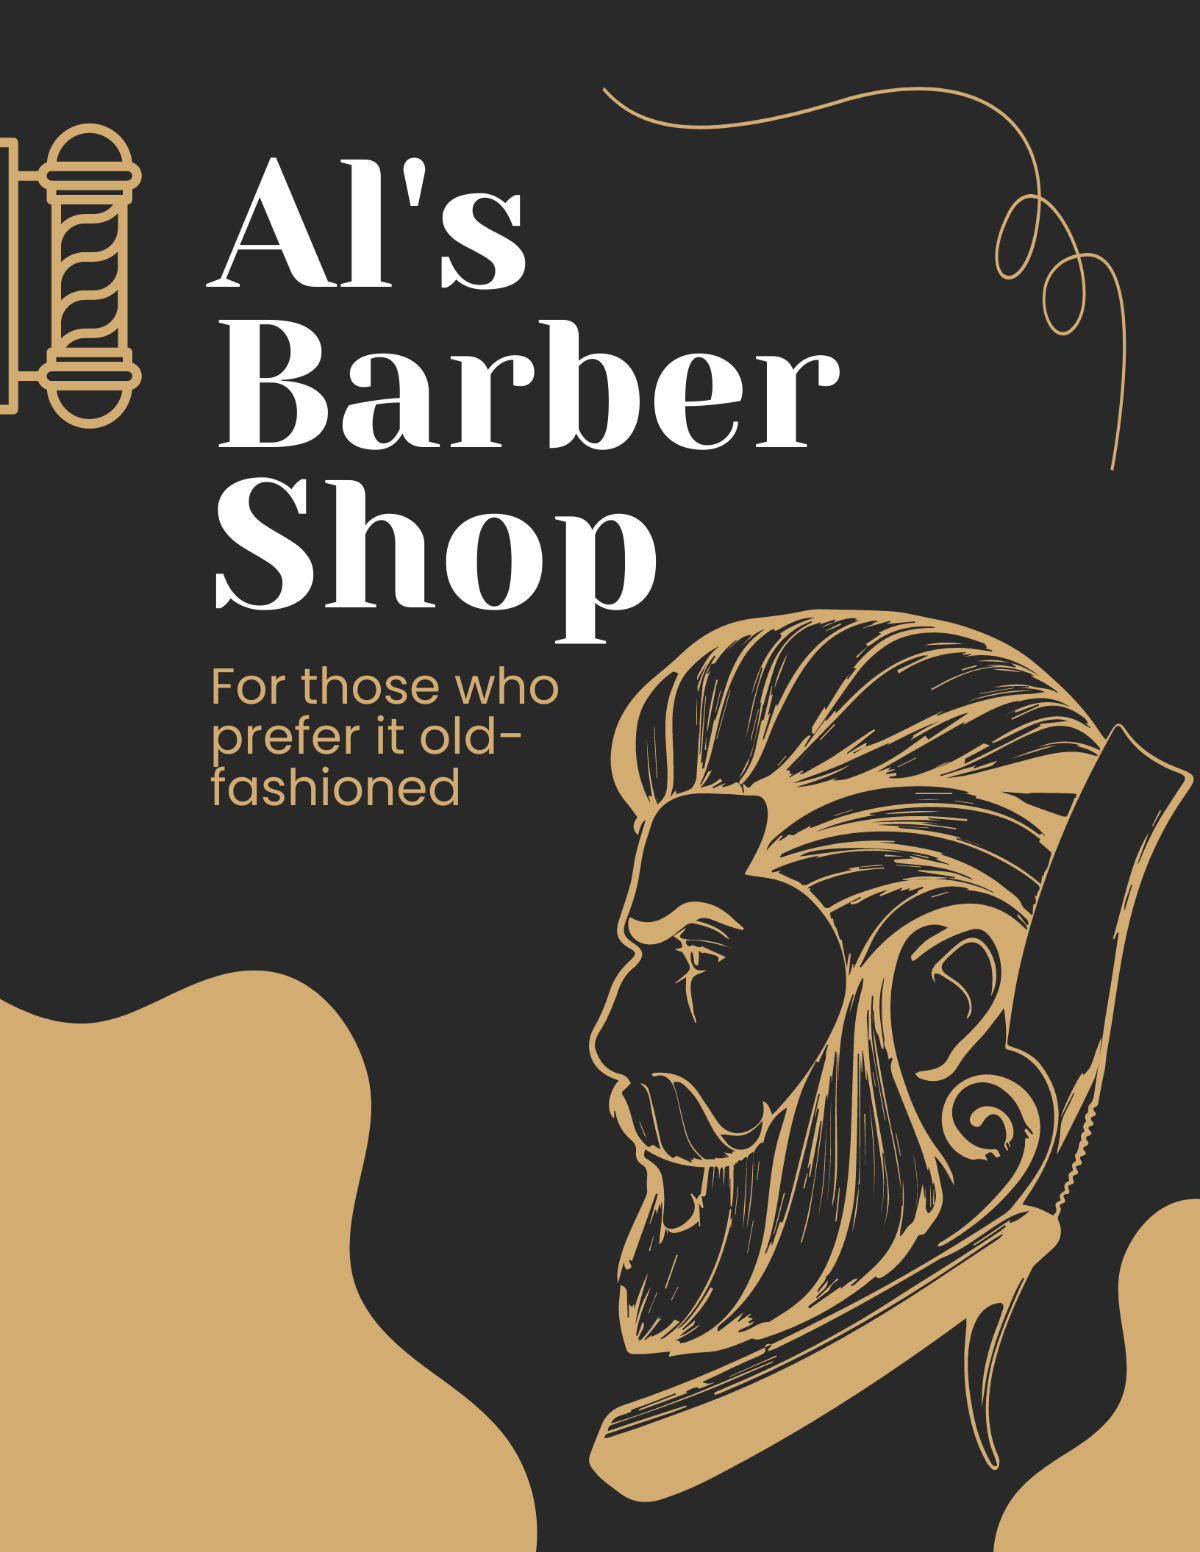 Vintage Barber Shop Flyer Template